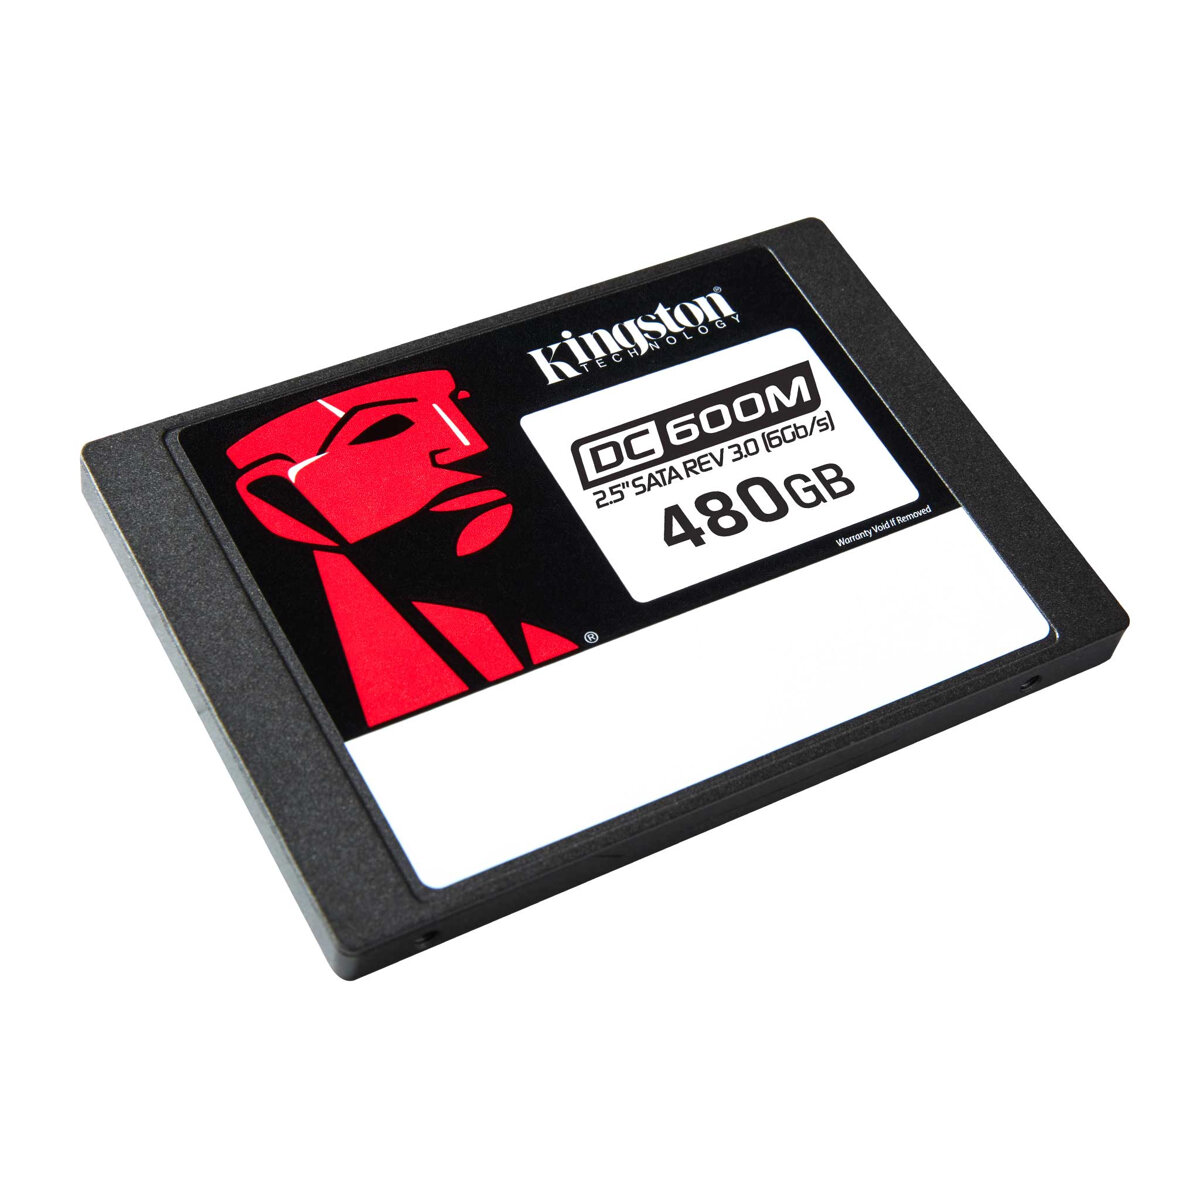 Dysk SSD Kingston DC600M 480GB po skosie w prawo na białym tle